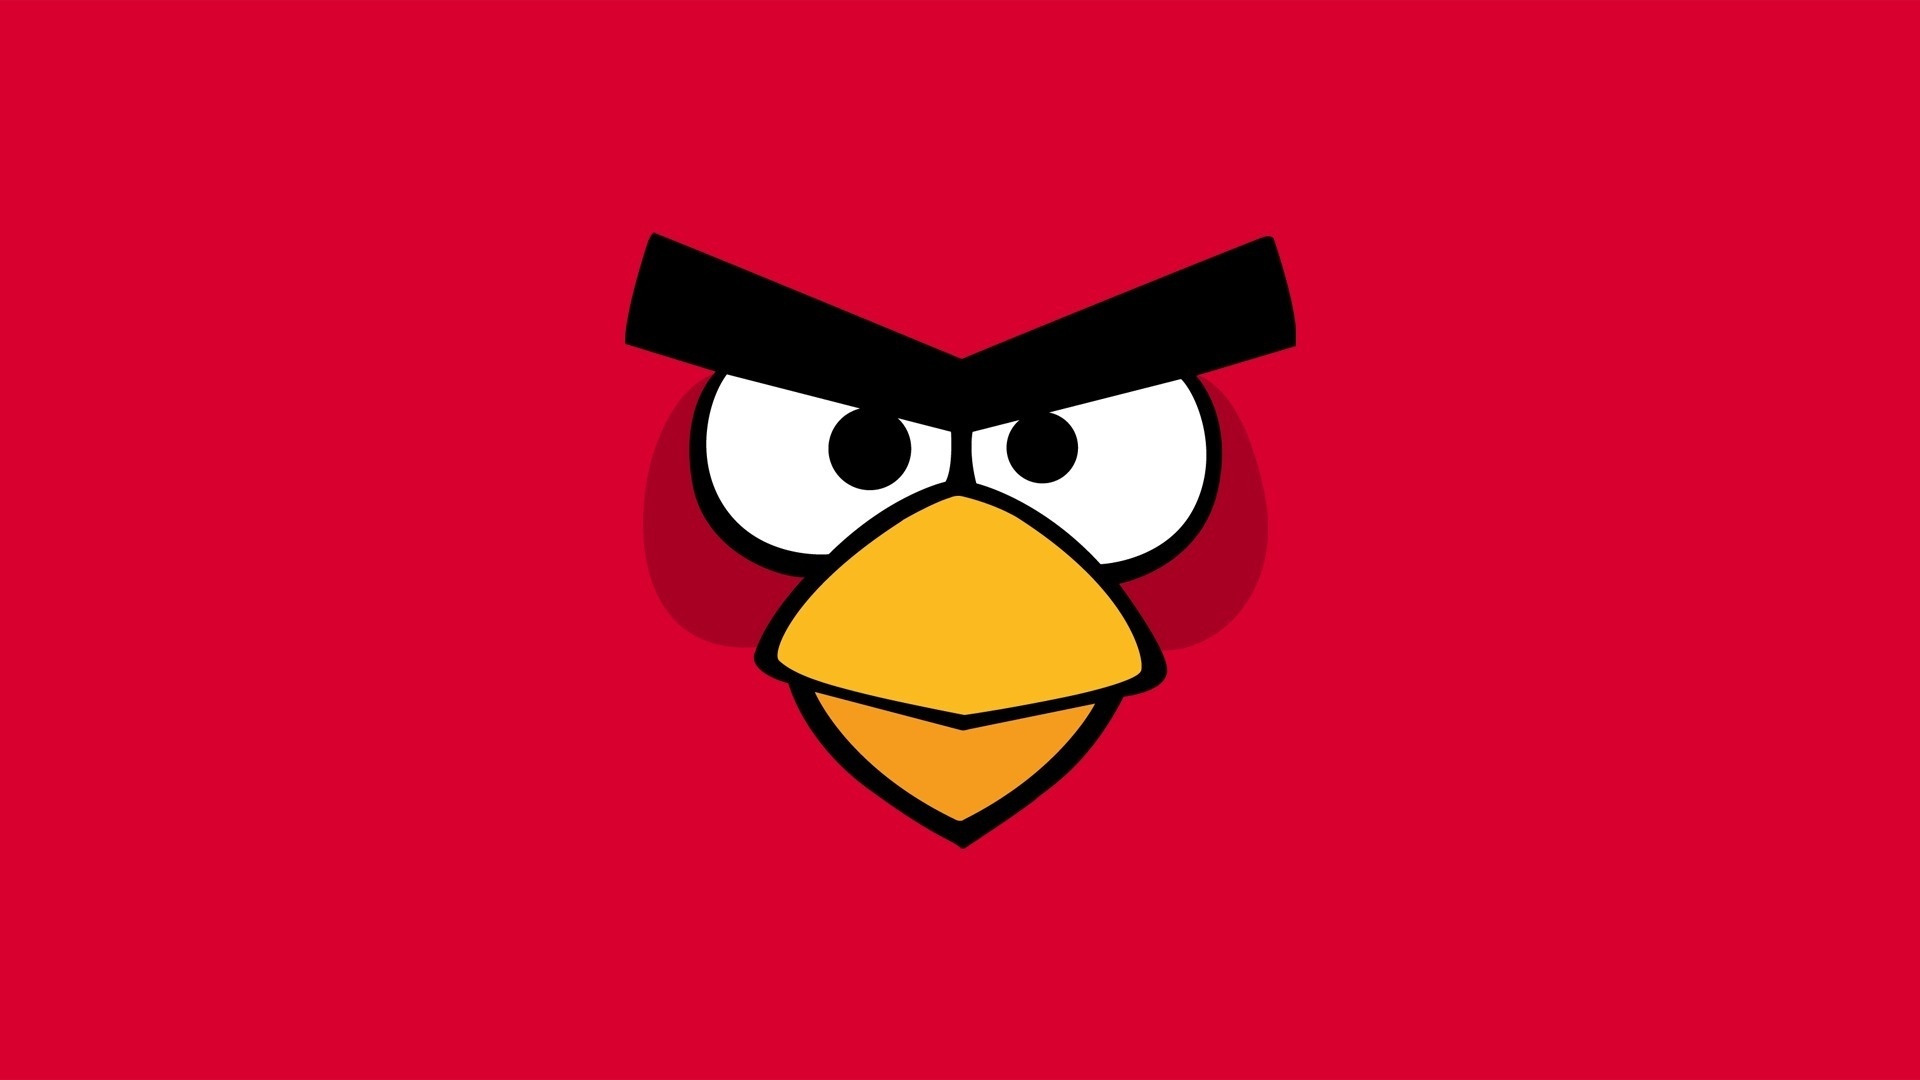 Laden Sie Angry Birds HD-Desktop-Hintergründe herunter